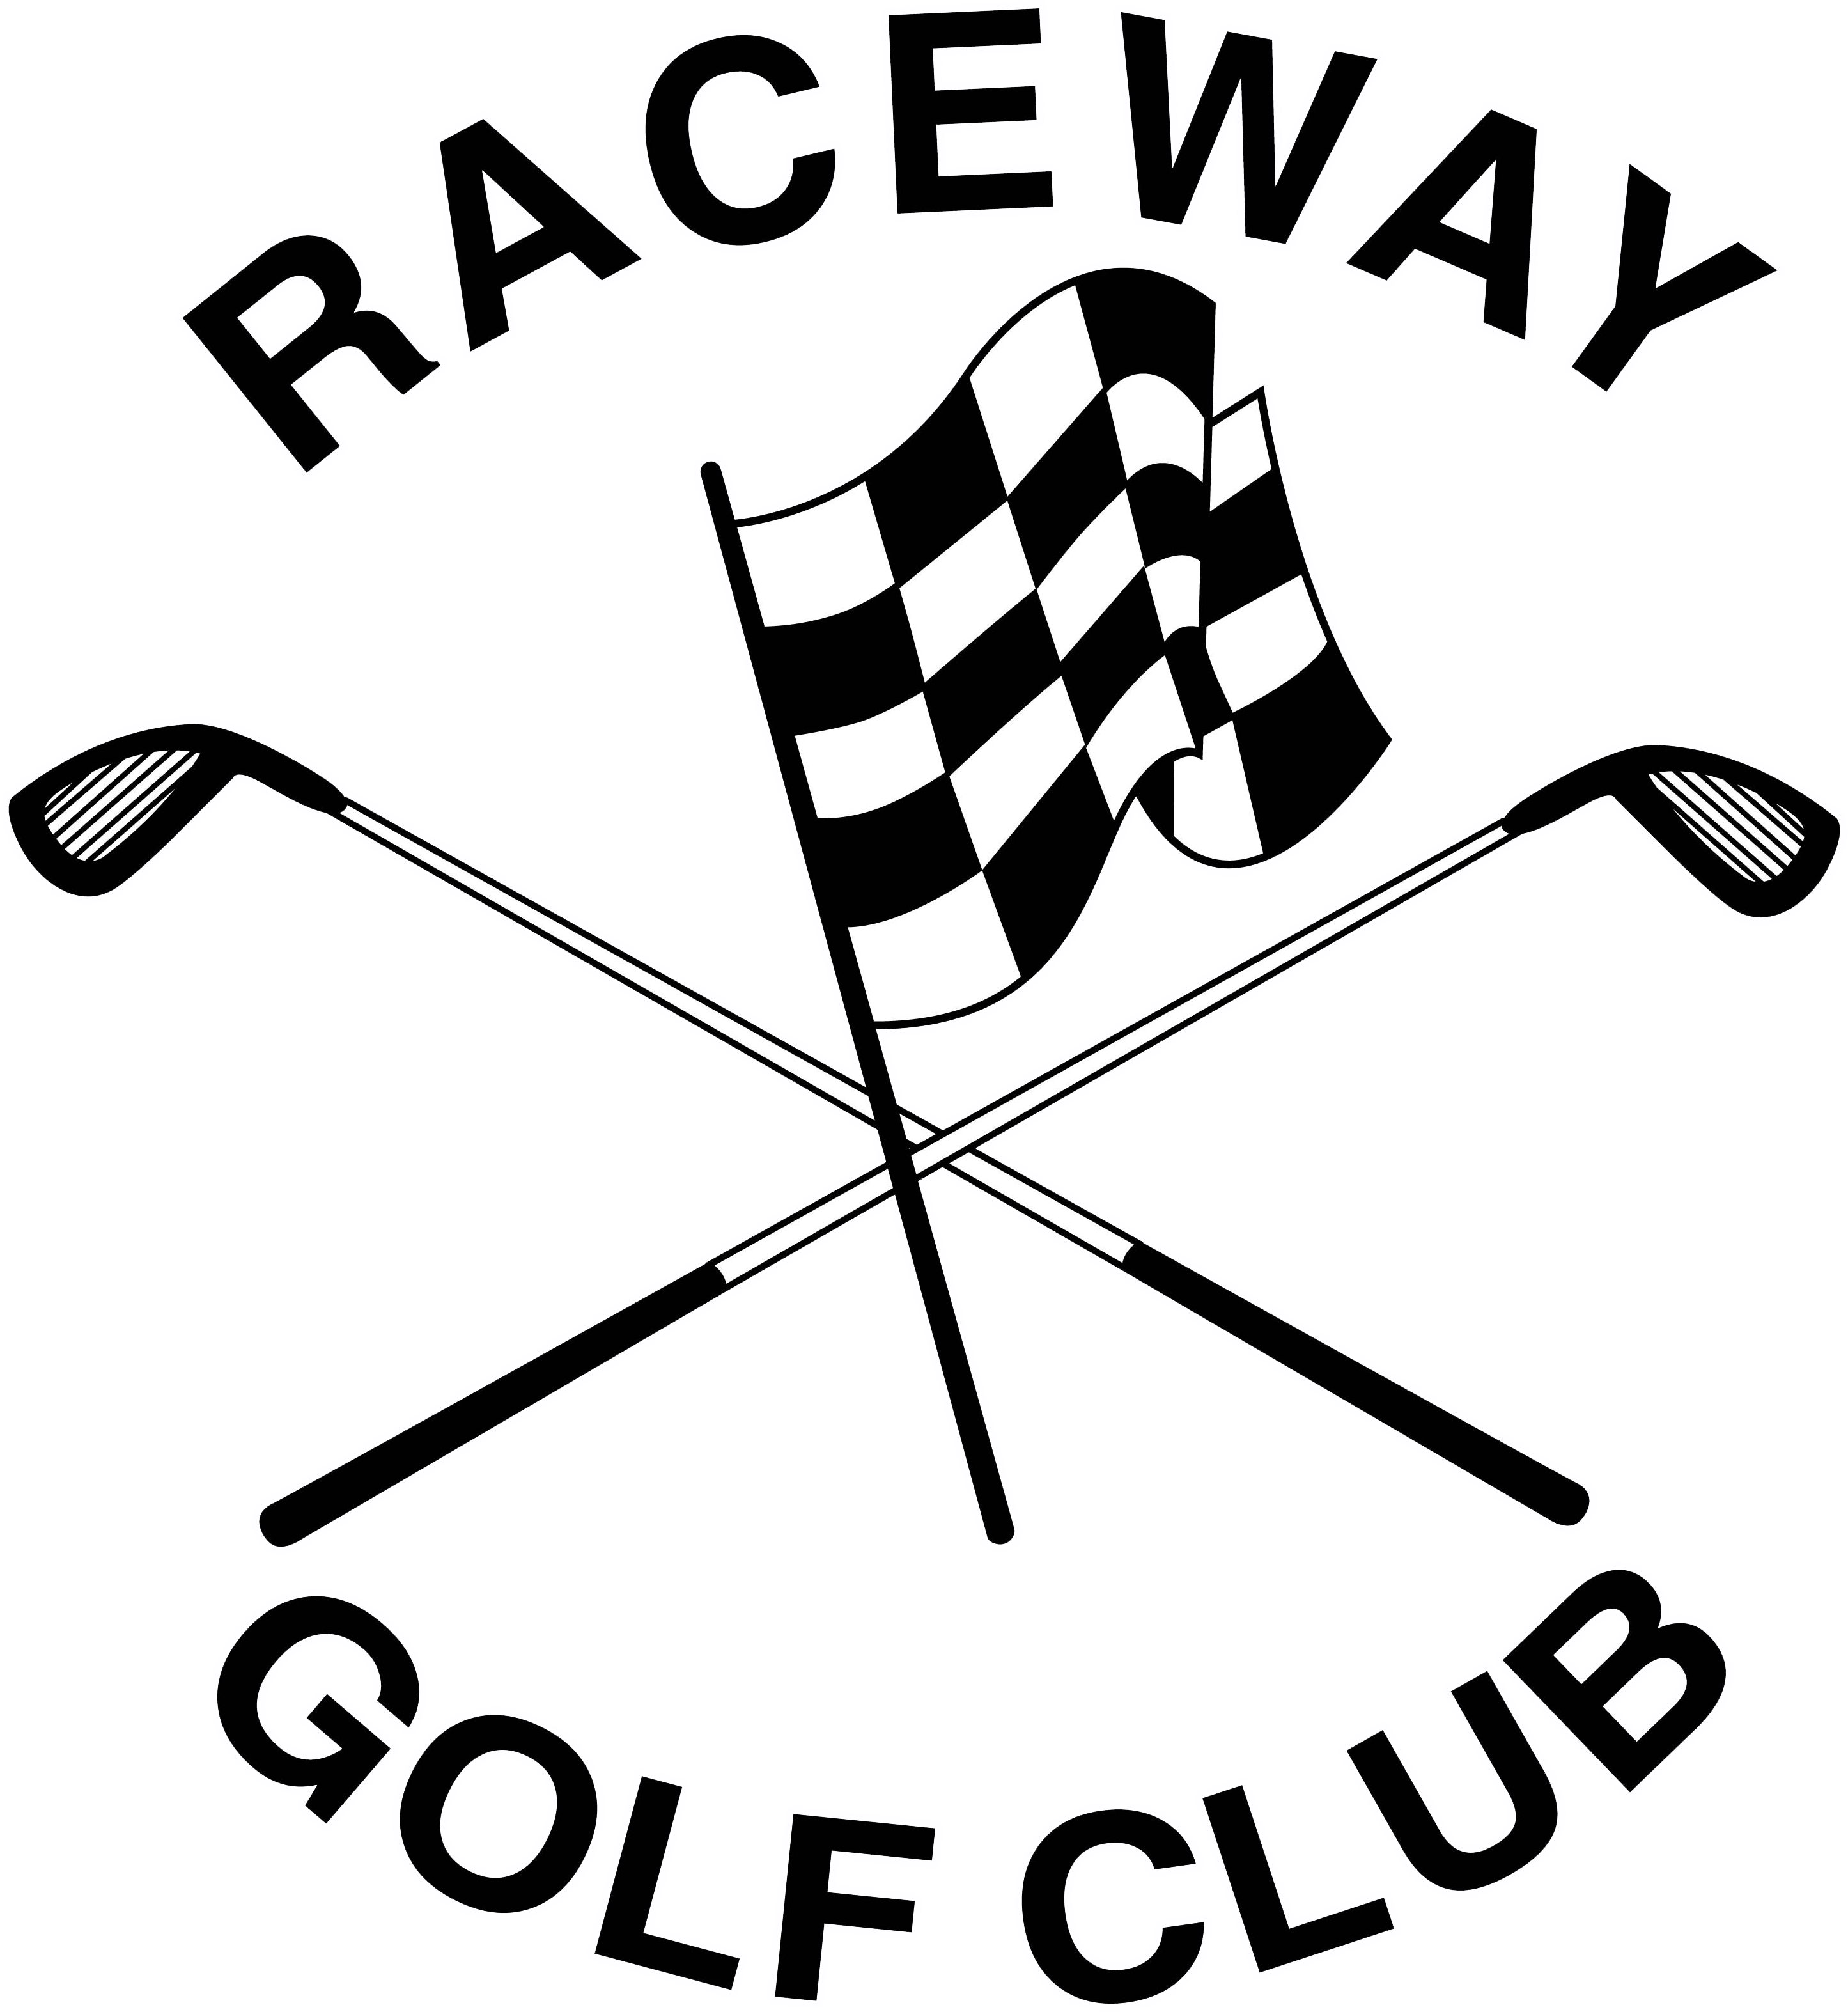 Raceway - Devon Meadows Football Club (3000x3408)